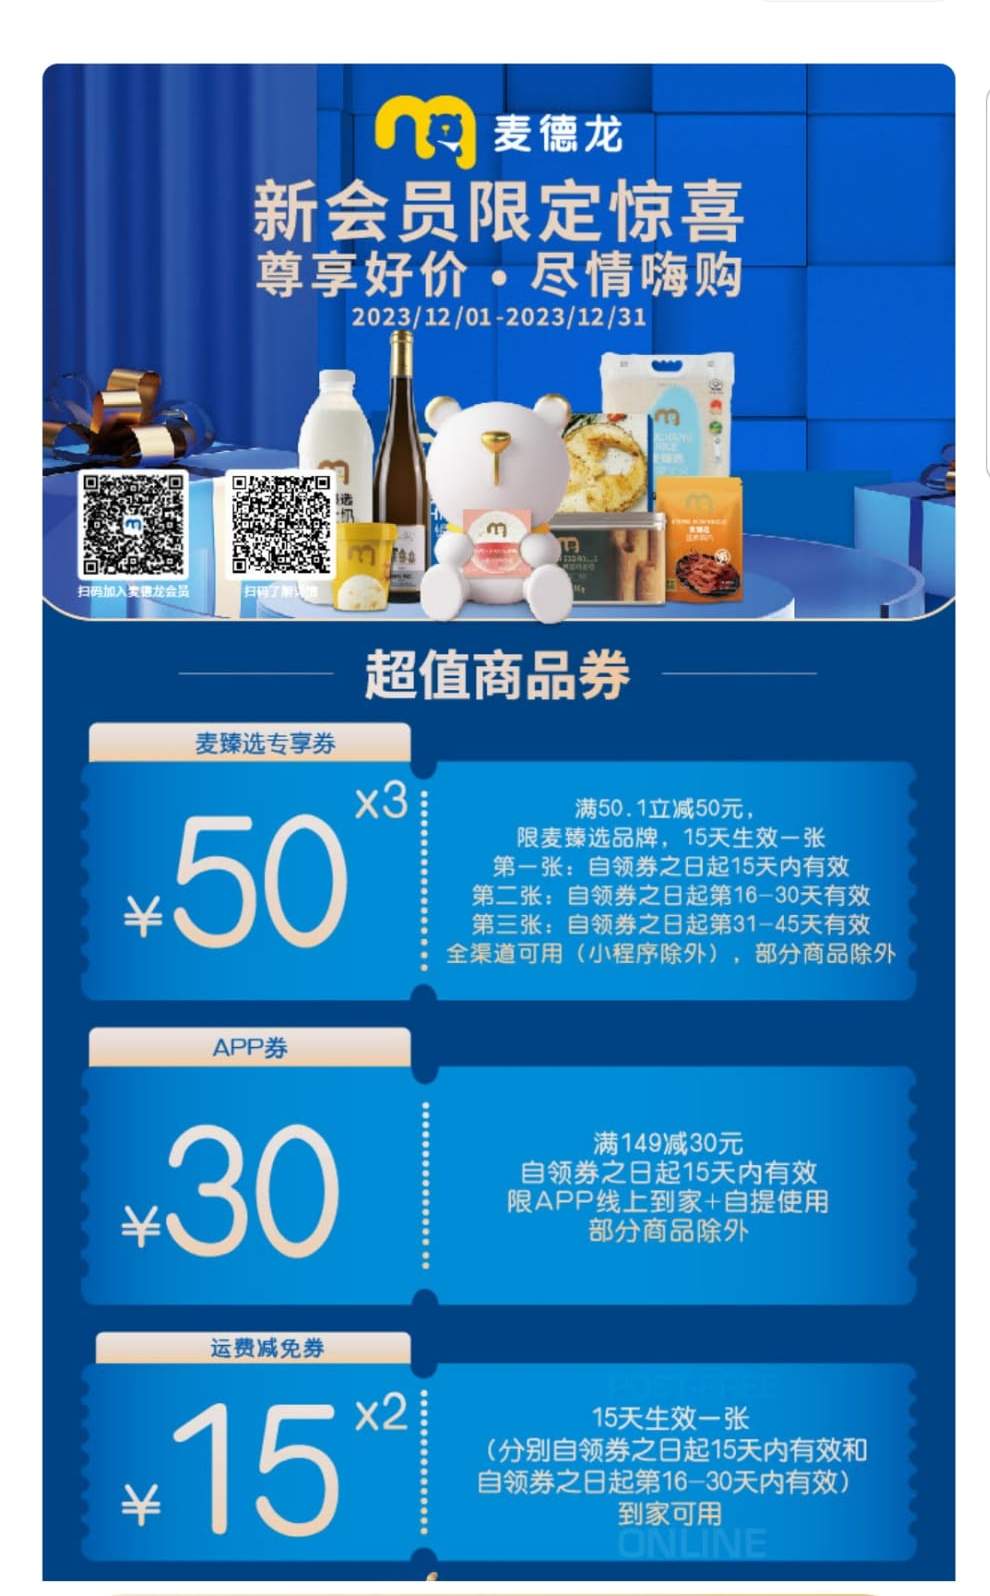 深圳麦德龙超市新会员优惠，购物满指定金额可获赠超值商品券。